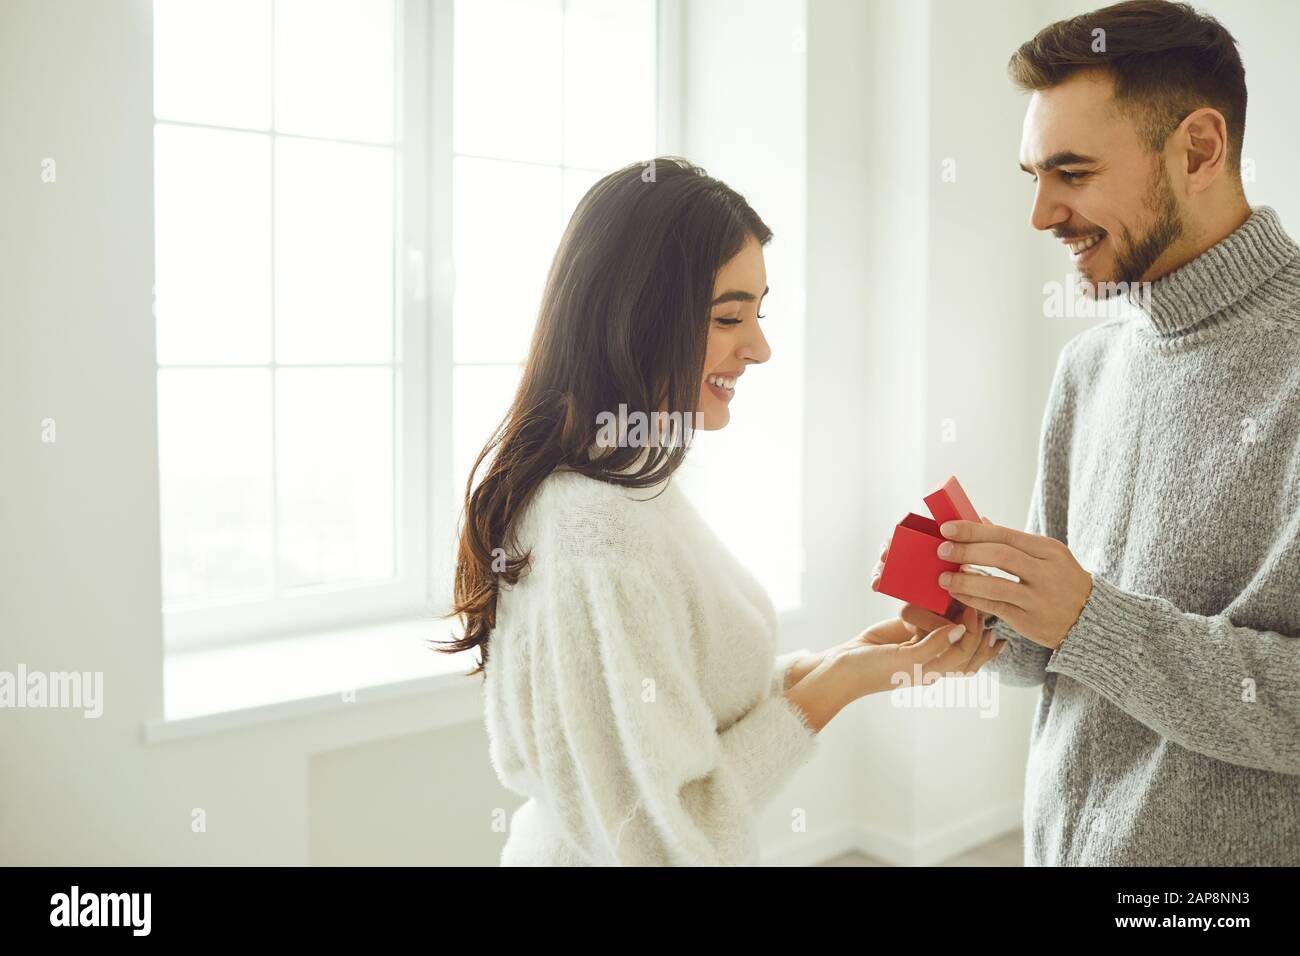 Il ragazzo fa una proposta di matrimonio alla ragazza. Sorridendo l'uomo dà un anello di proposta di matrimonio in camera. Foto Stock